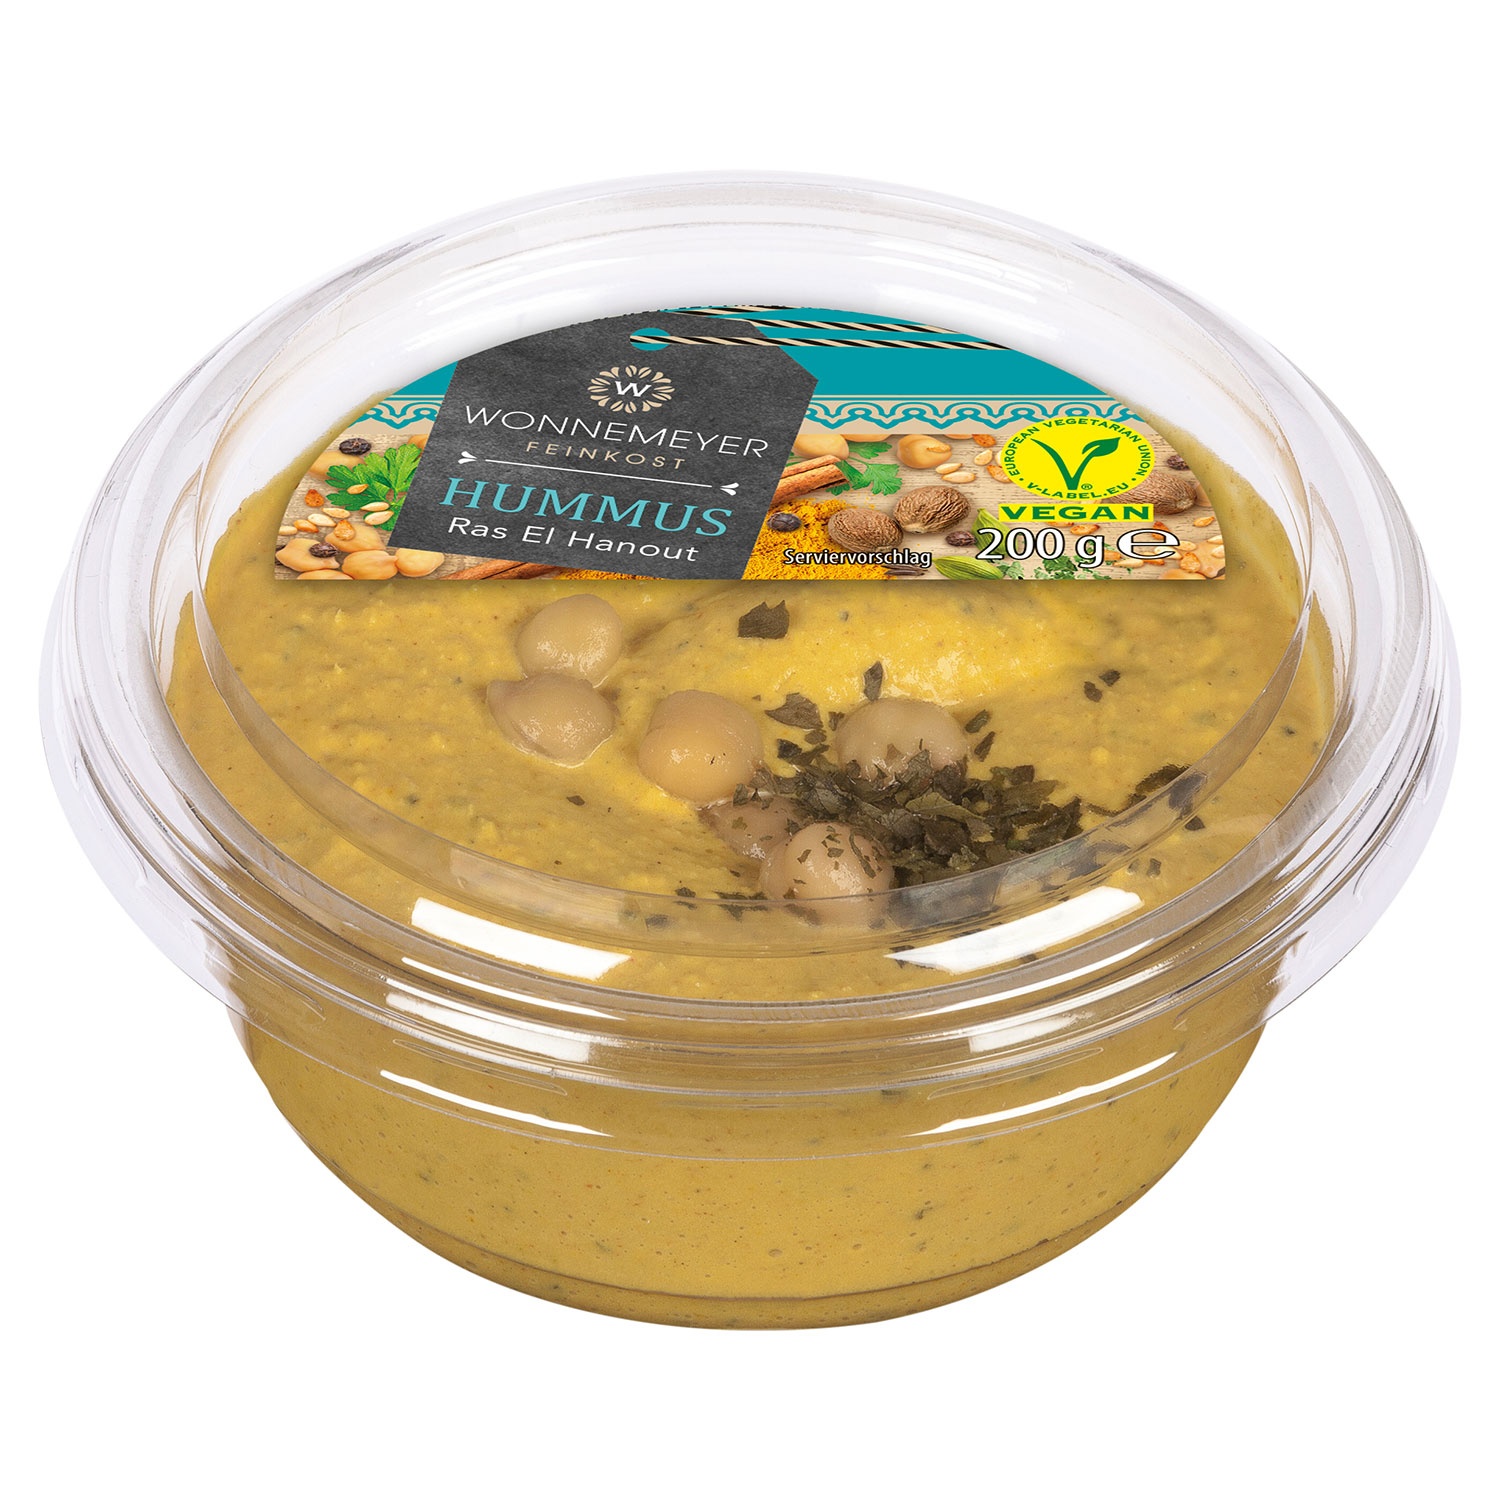 WONNEMEYER Hummus 200 g